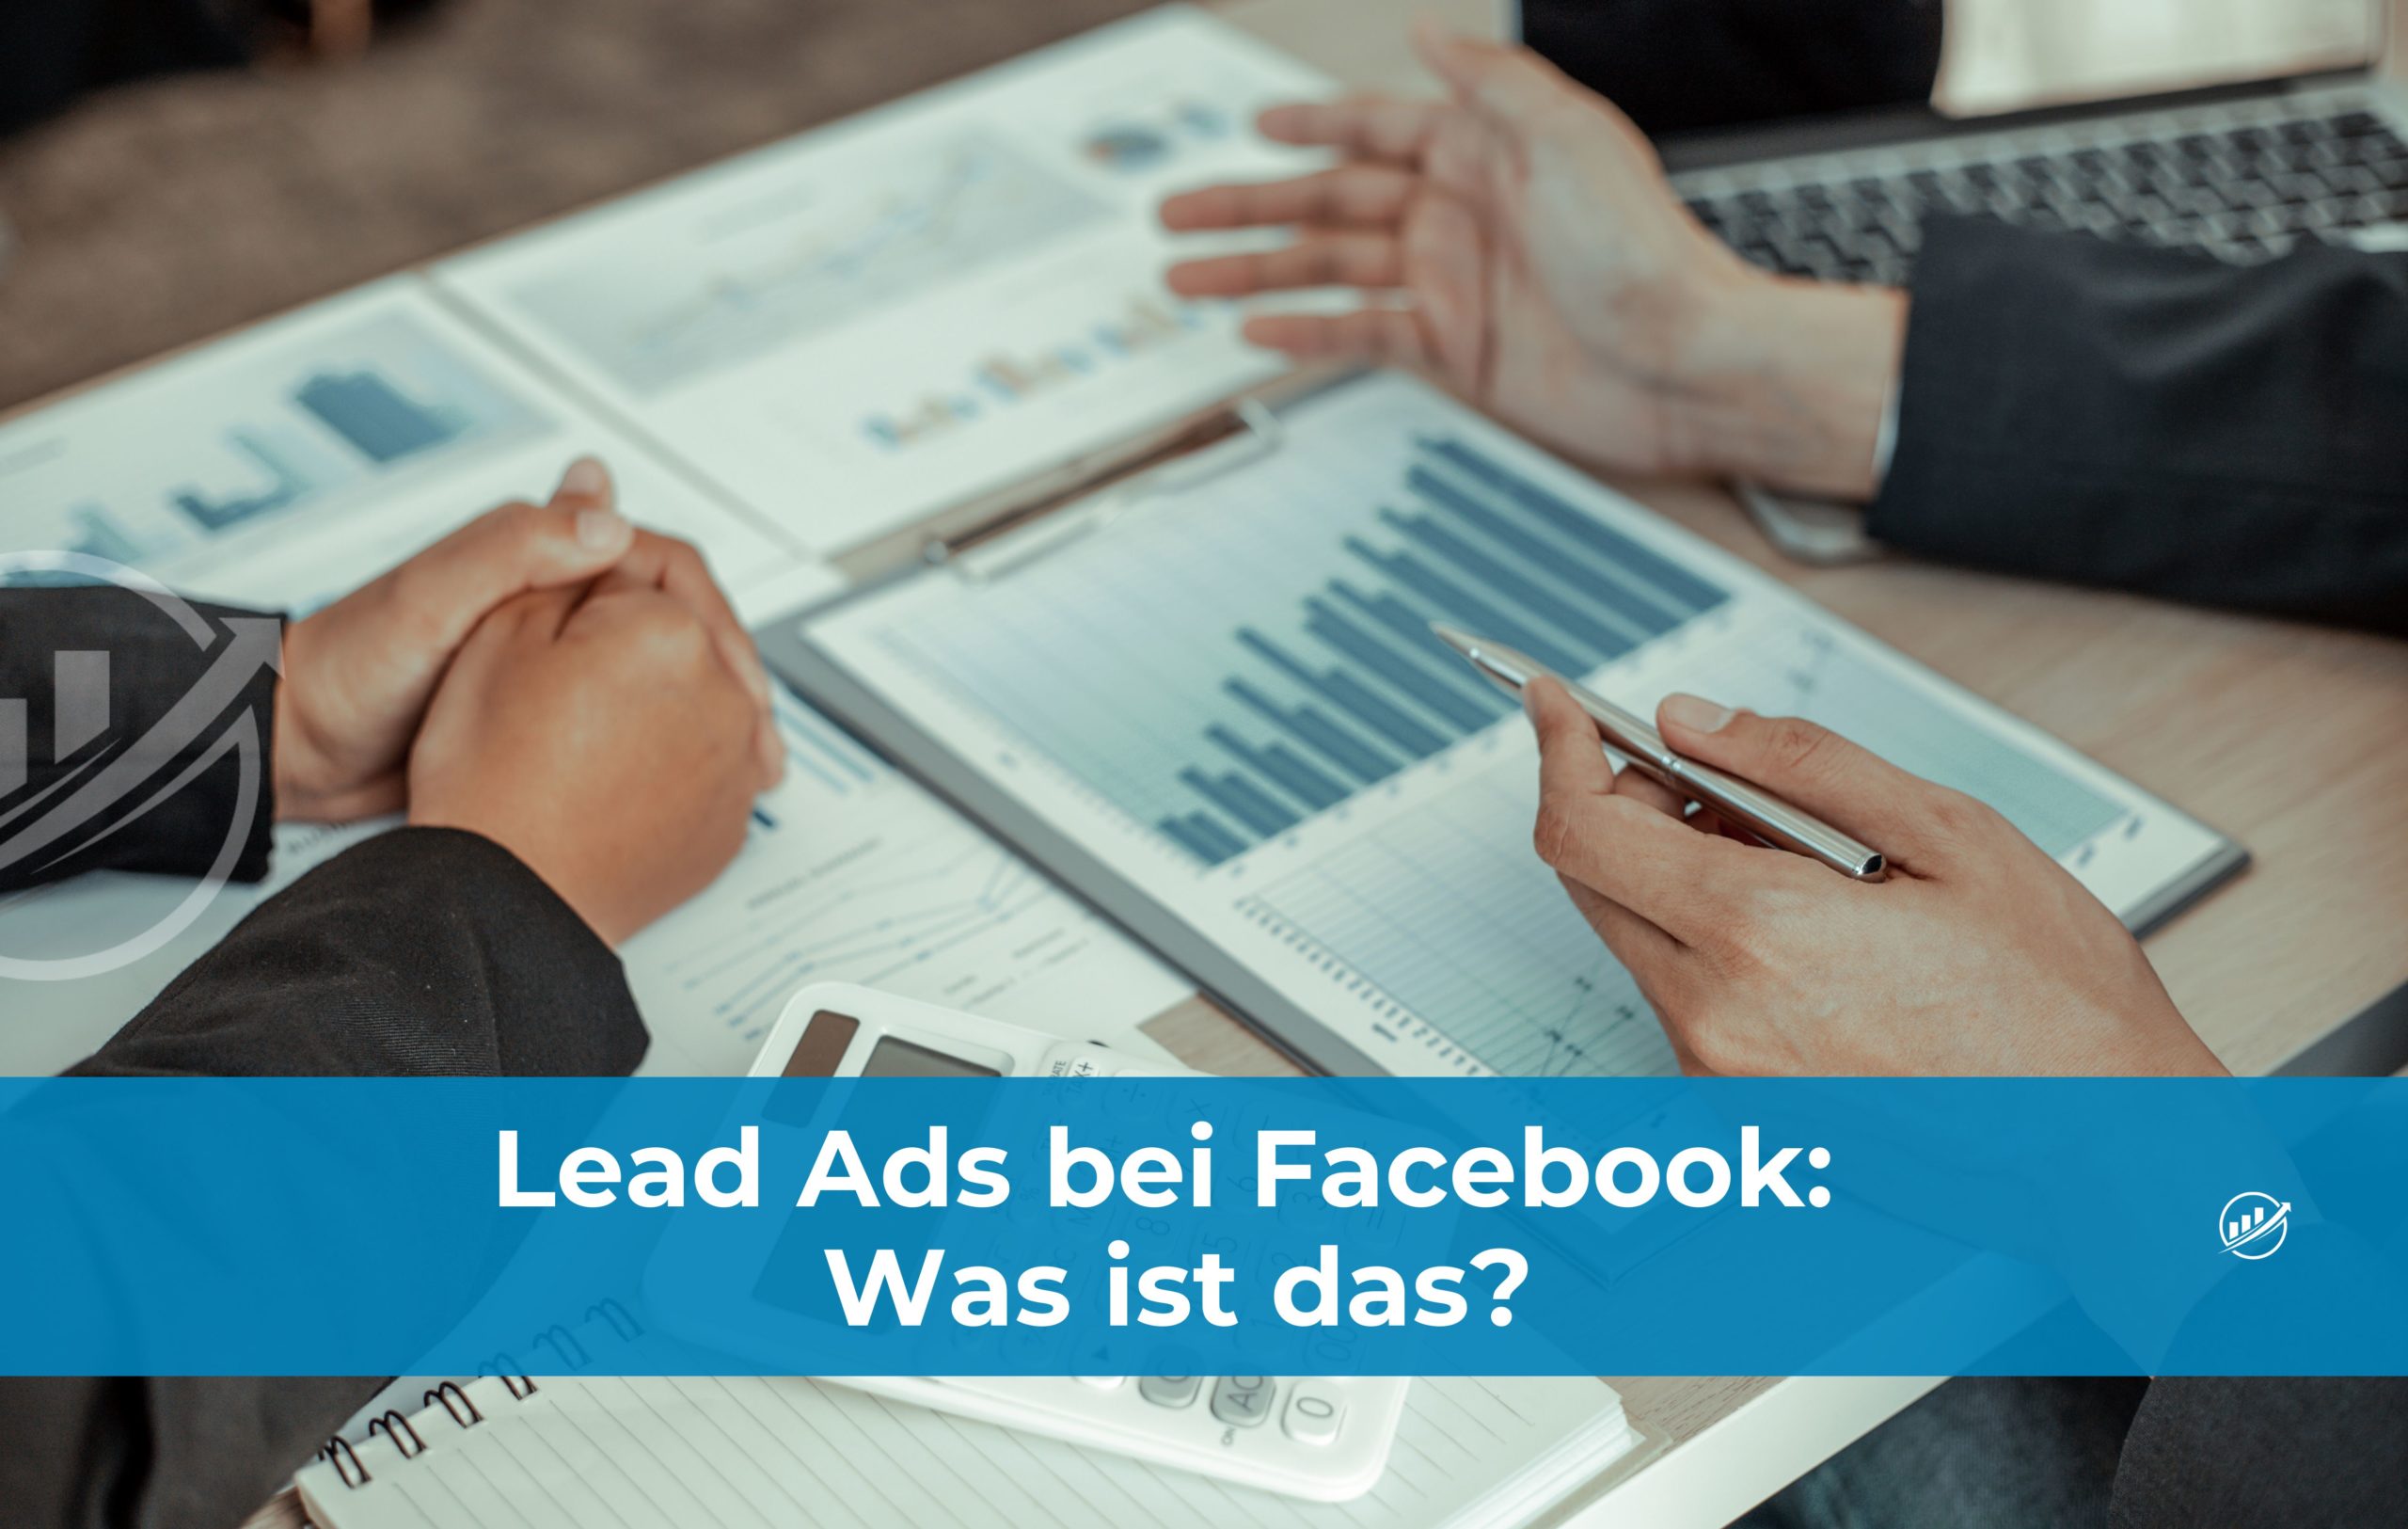 Lead Ads bei Facebook: Was ist das?